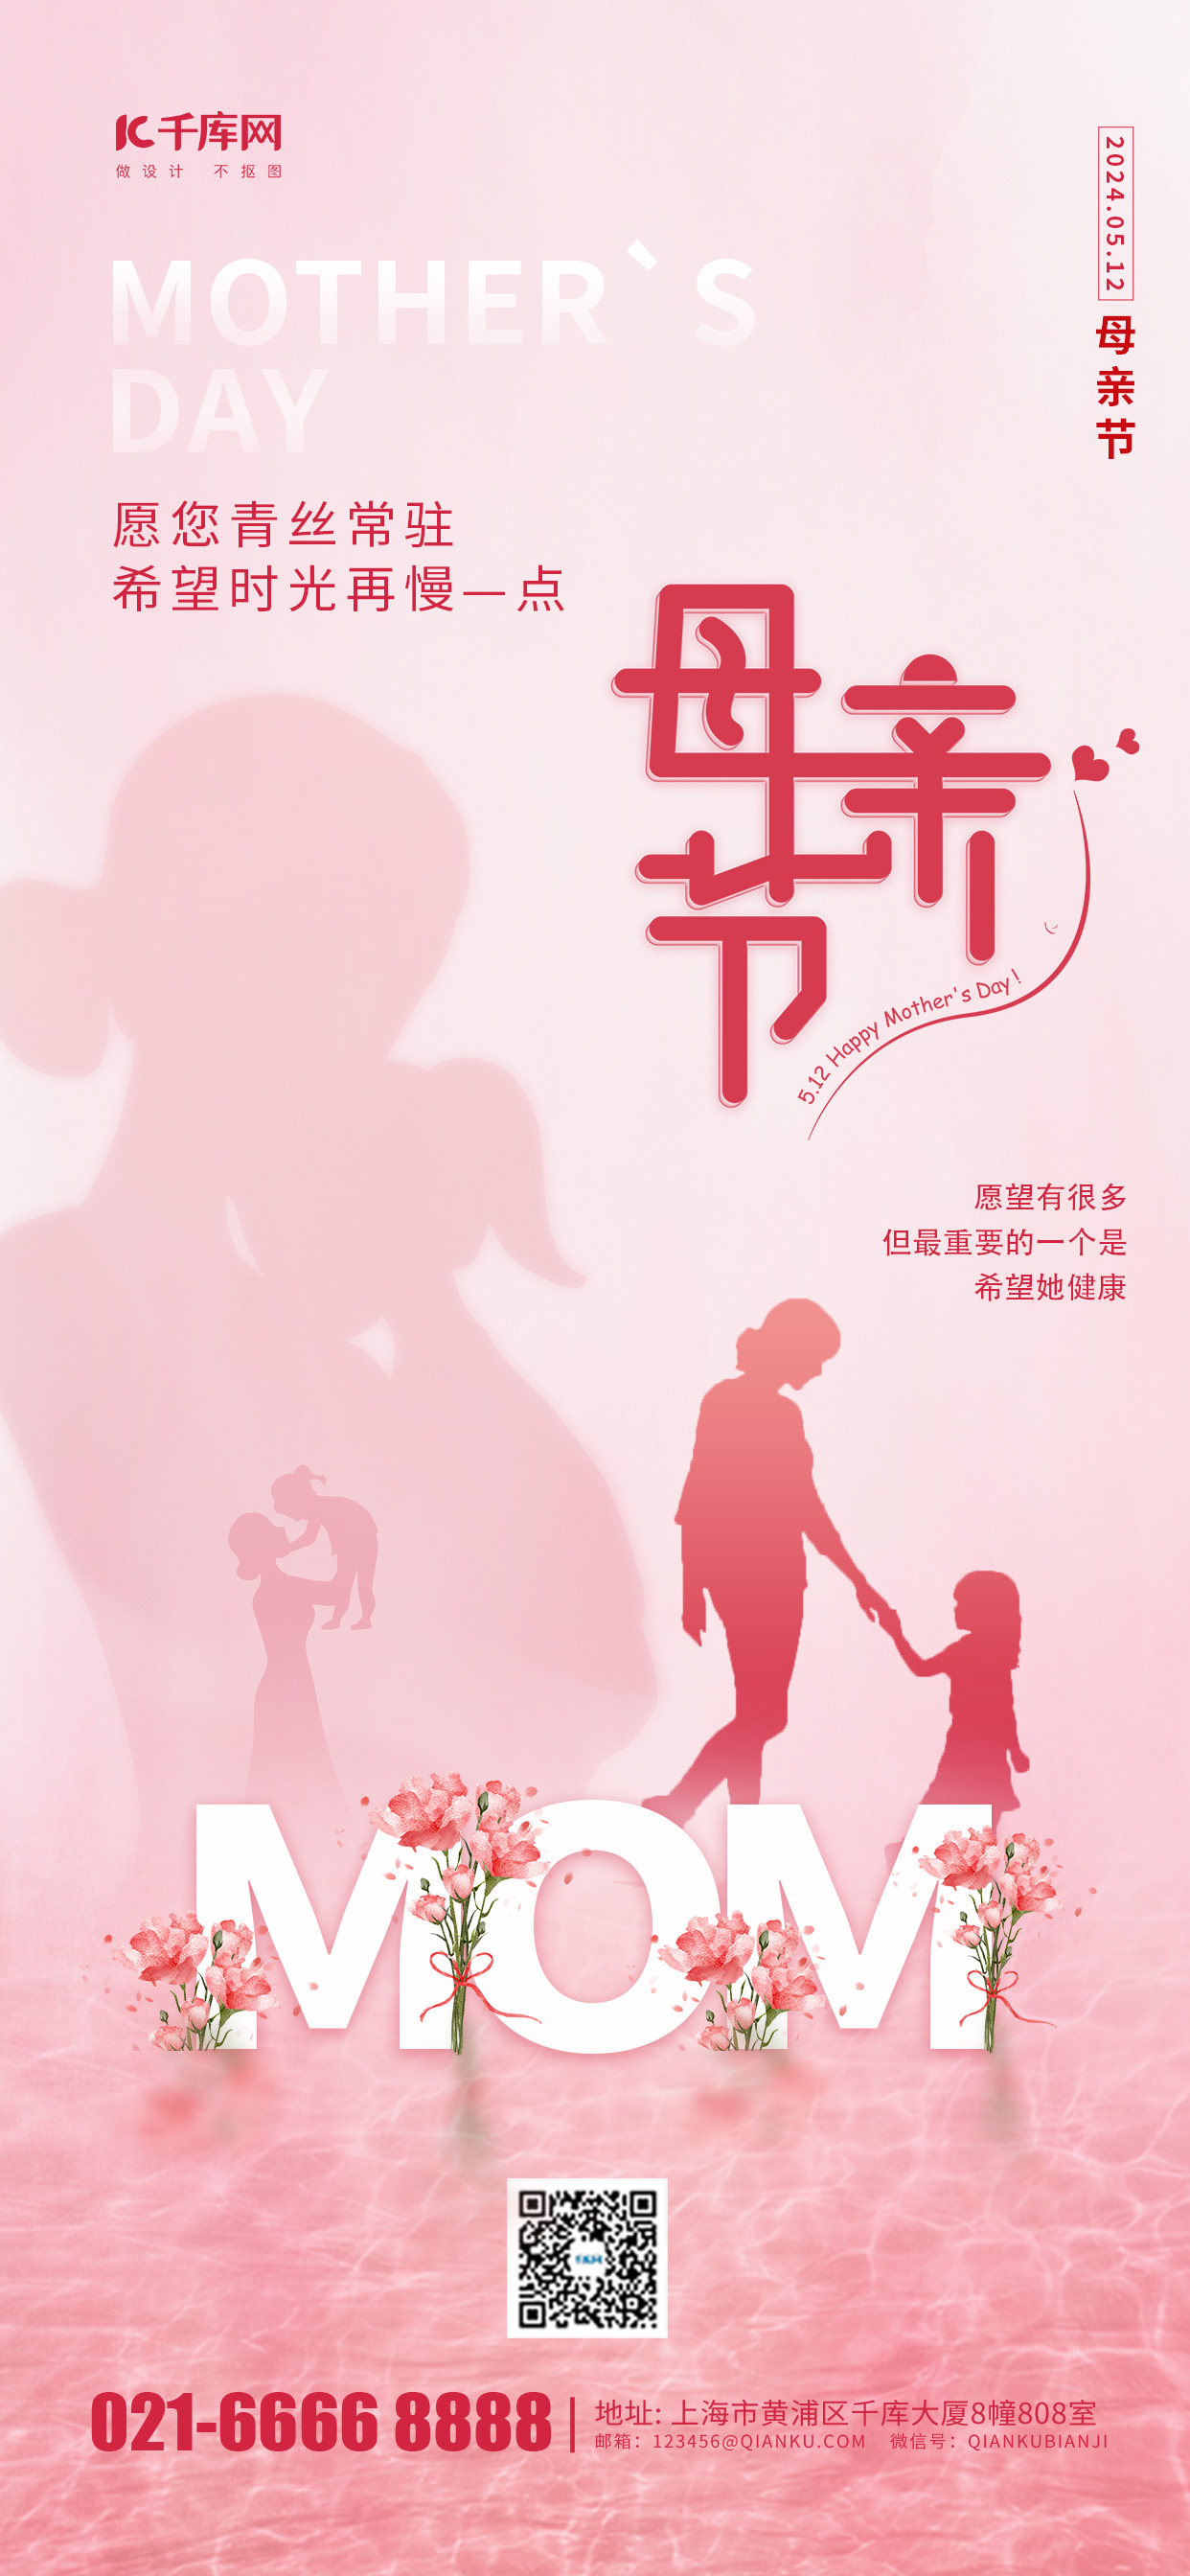 母亲节节日问候送祝福粉色简约风长图海报宣传海报模板图片